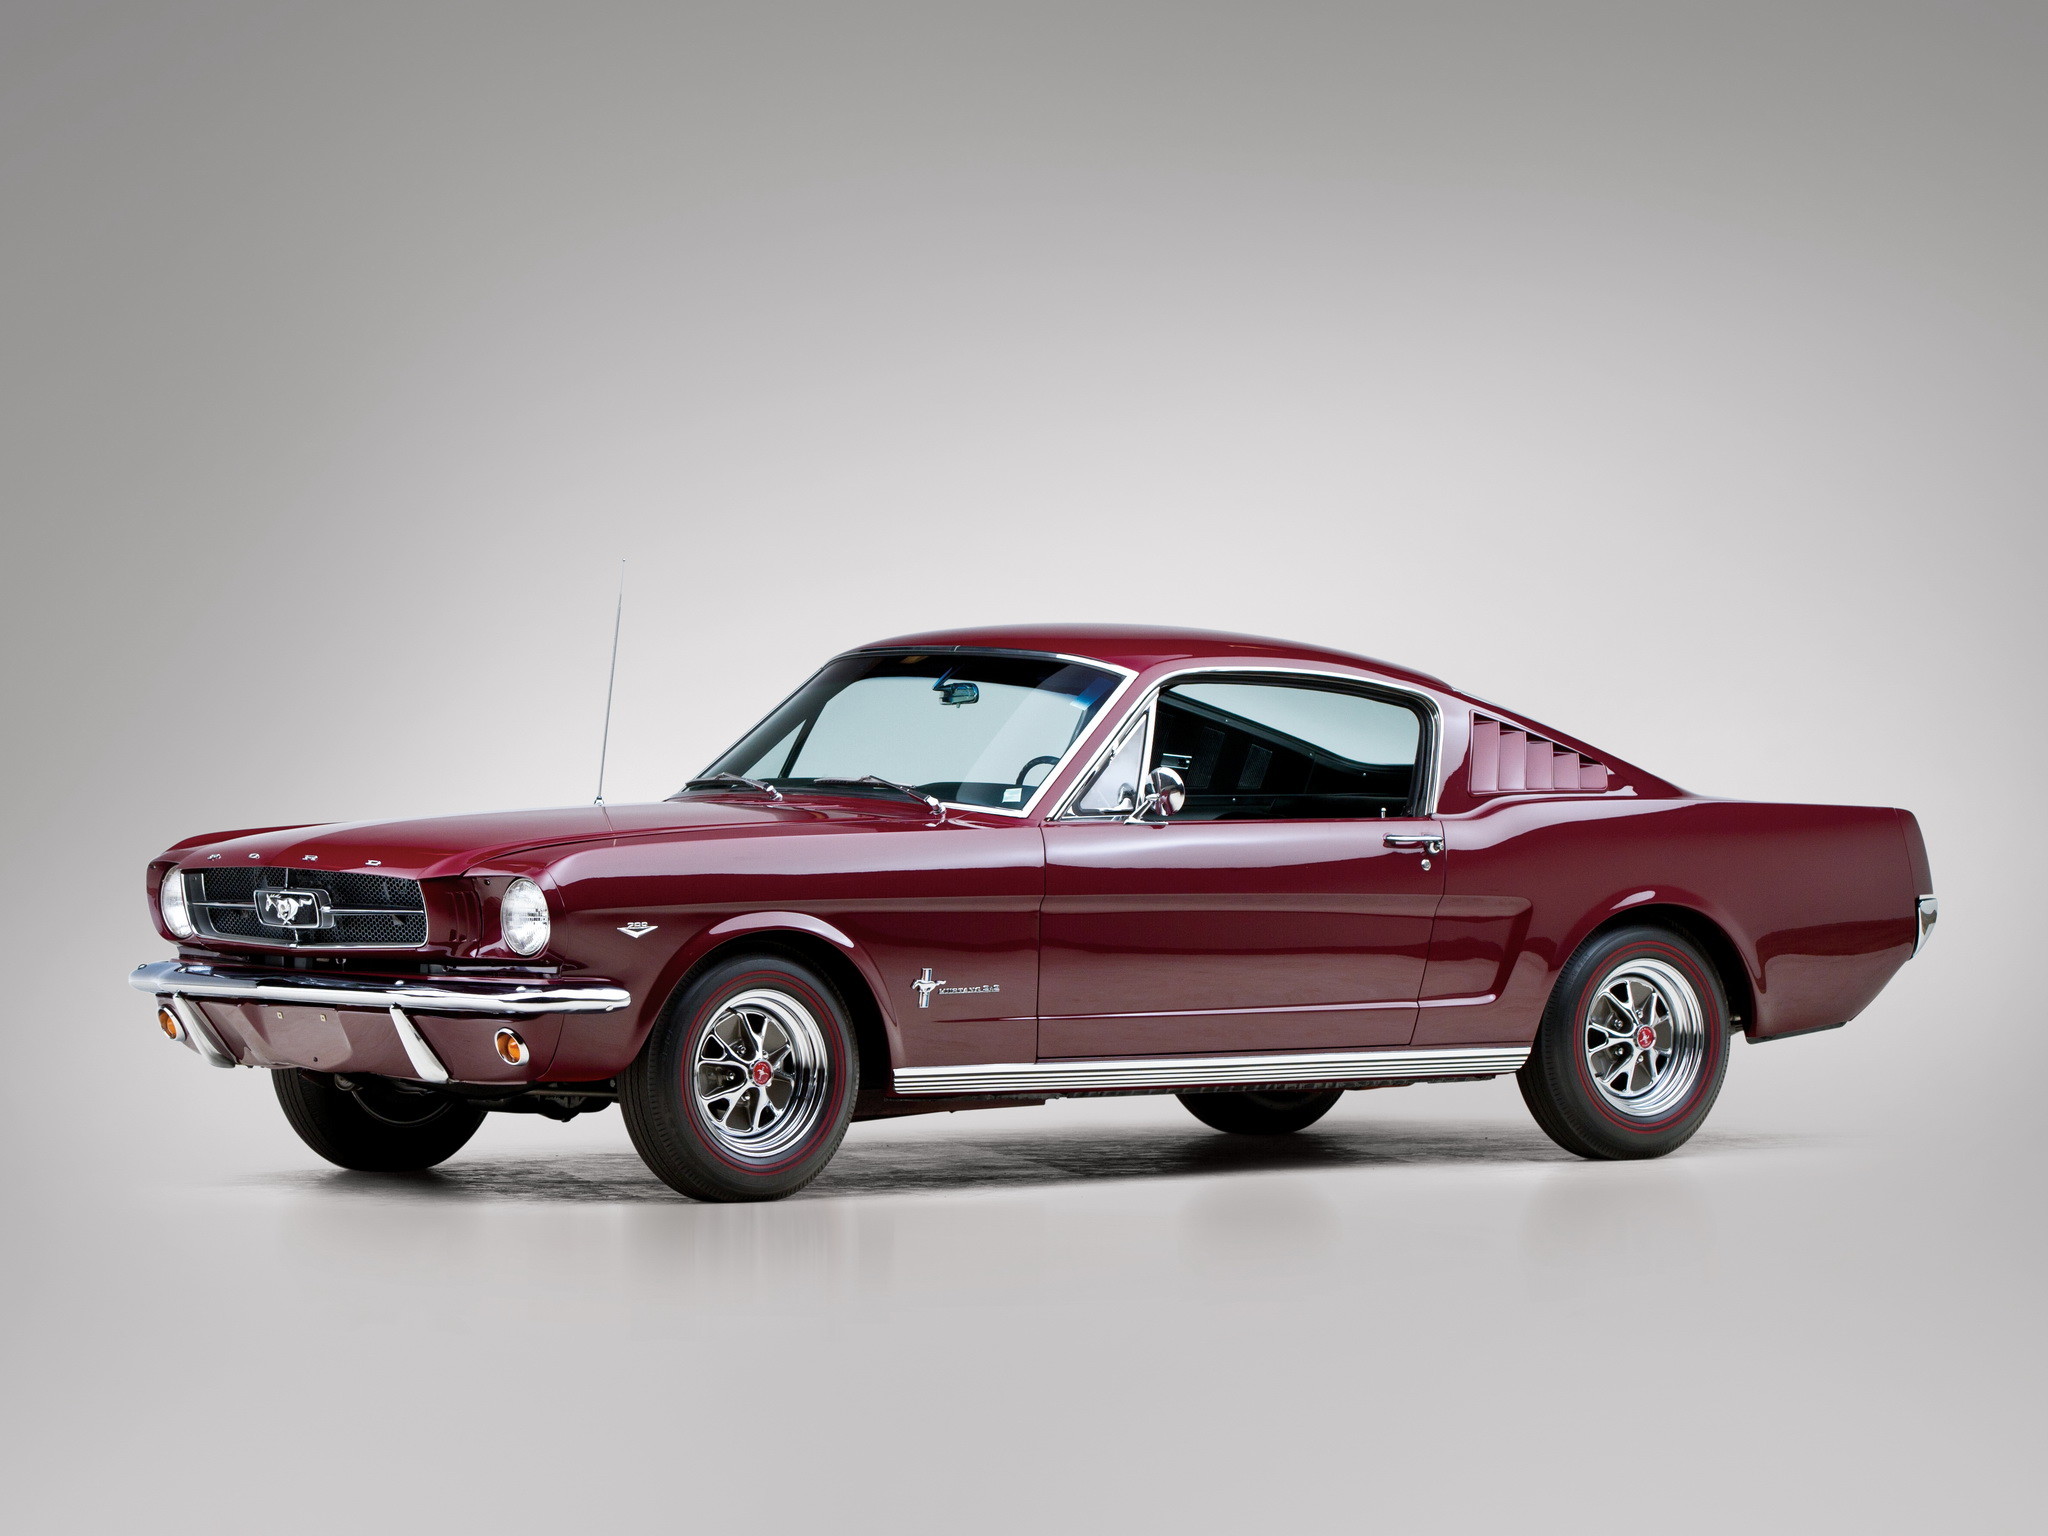 Первое поколение автомобилей. Ford Mustang Fastback 1965. Форд Мустанг 1964 фастбек. Ford Mustang 1 поколения. Форд Мустанг 1 поколения 1965.